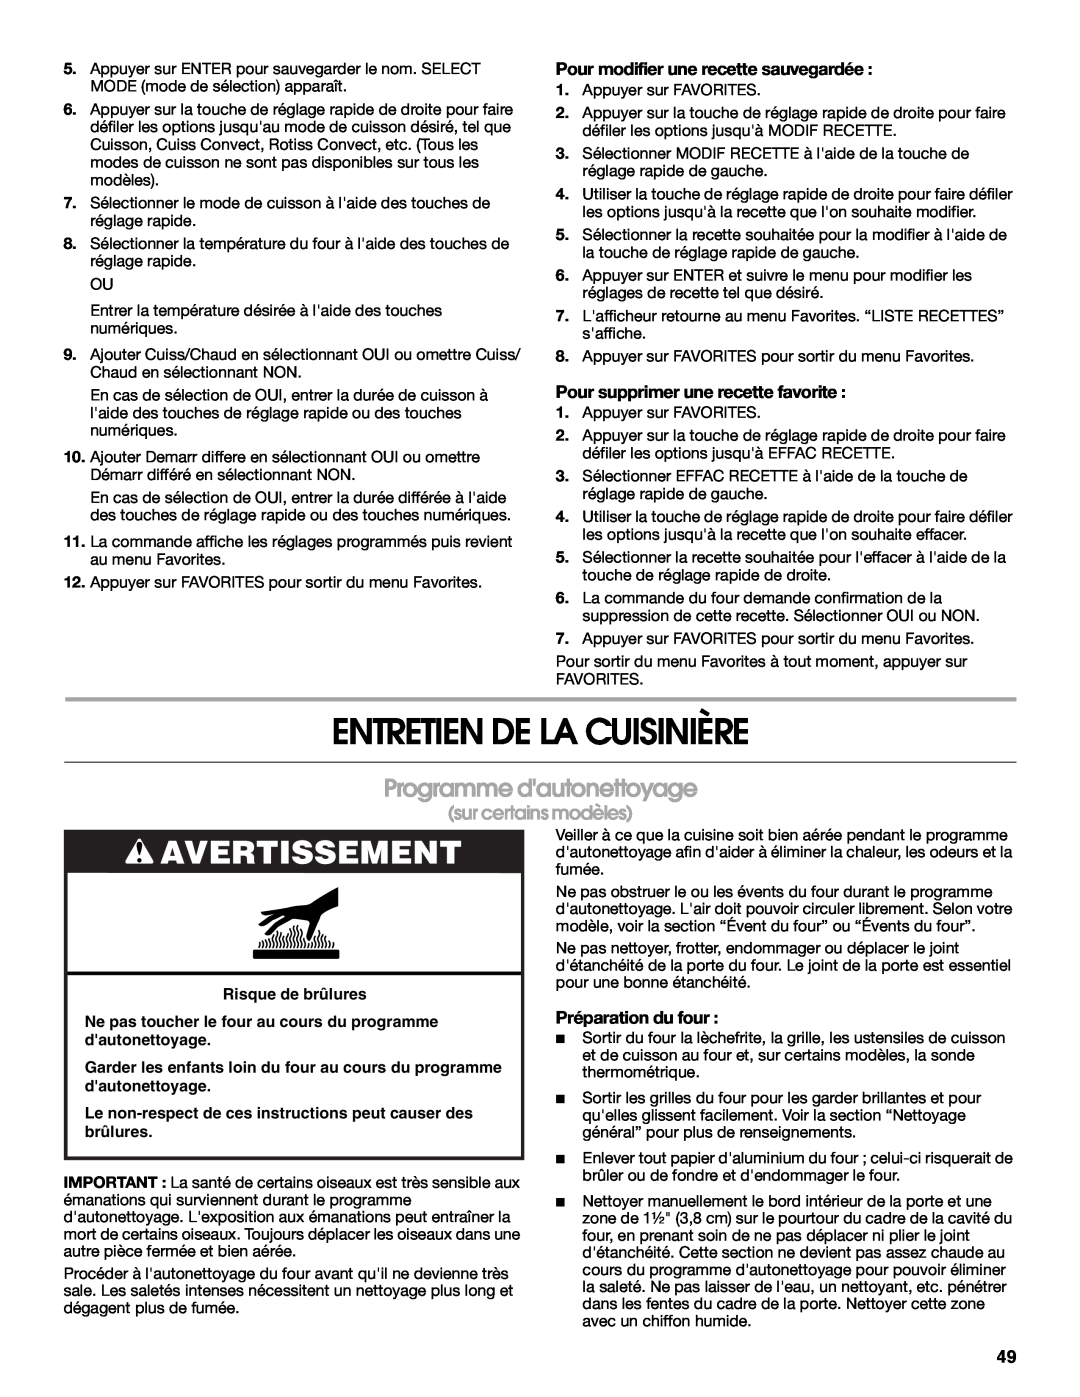 Jenn-Air JGS9900 manual Entretien De La Cuisinière, Programme dautonettoyage, Avertissement, sur certains modèles 